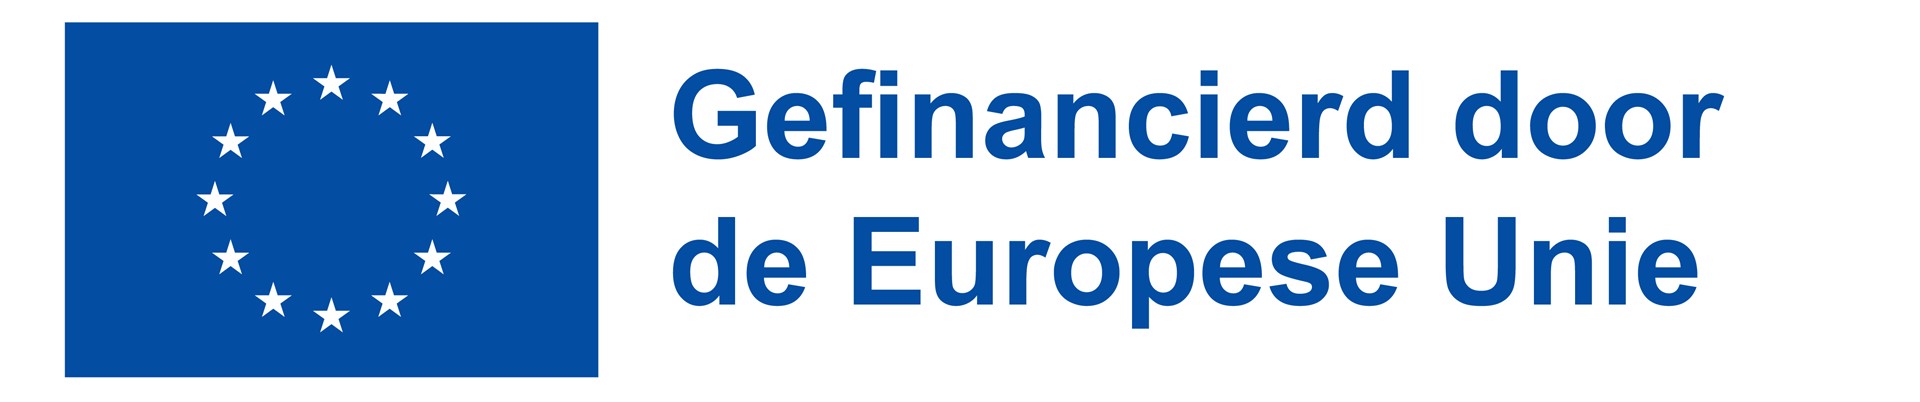 NL Gefinancierd door de Europese Unie_PANTONE.jpg